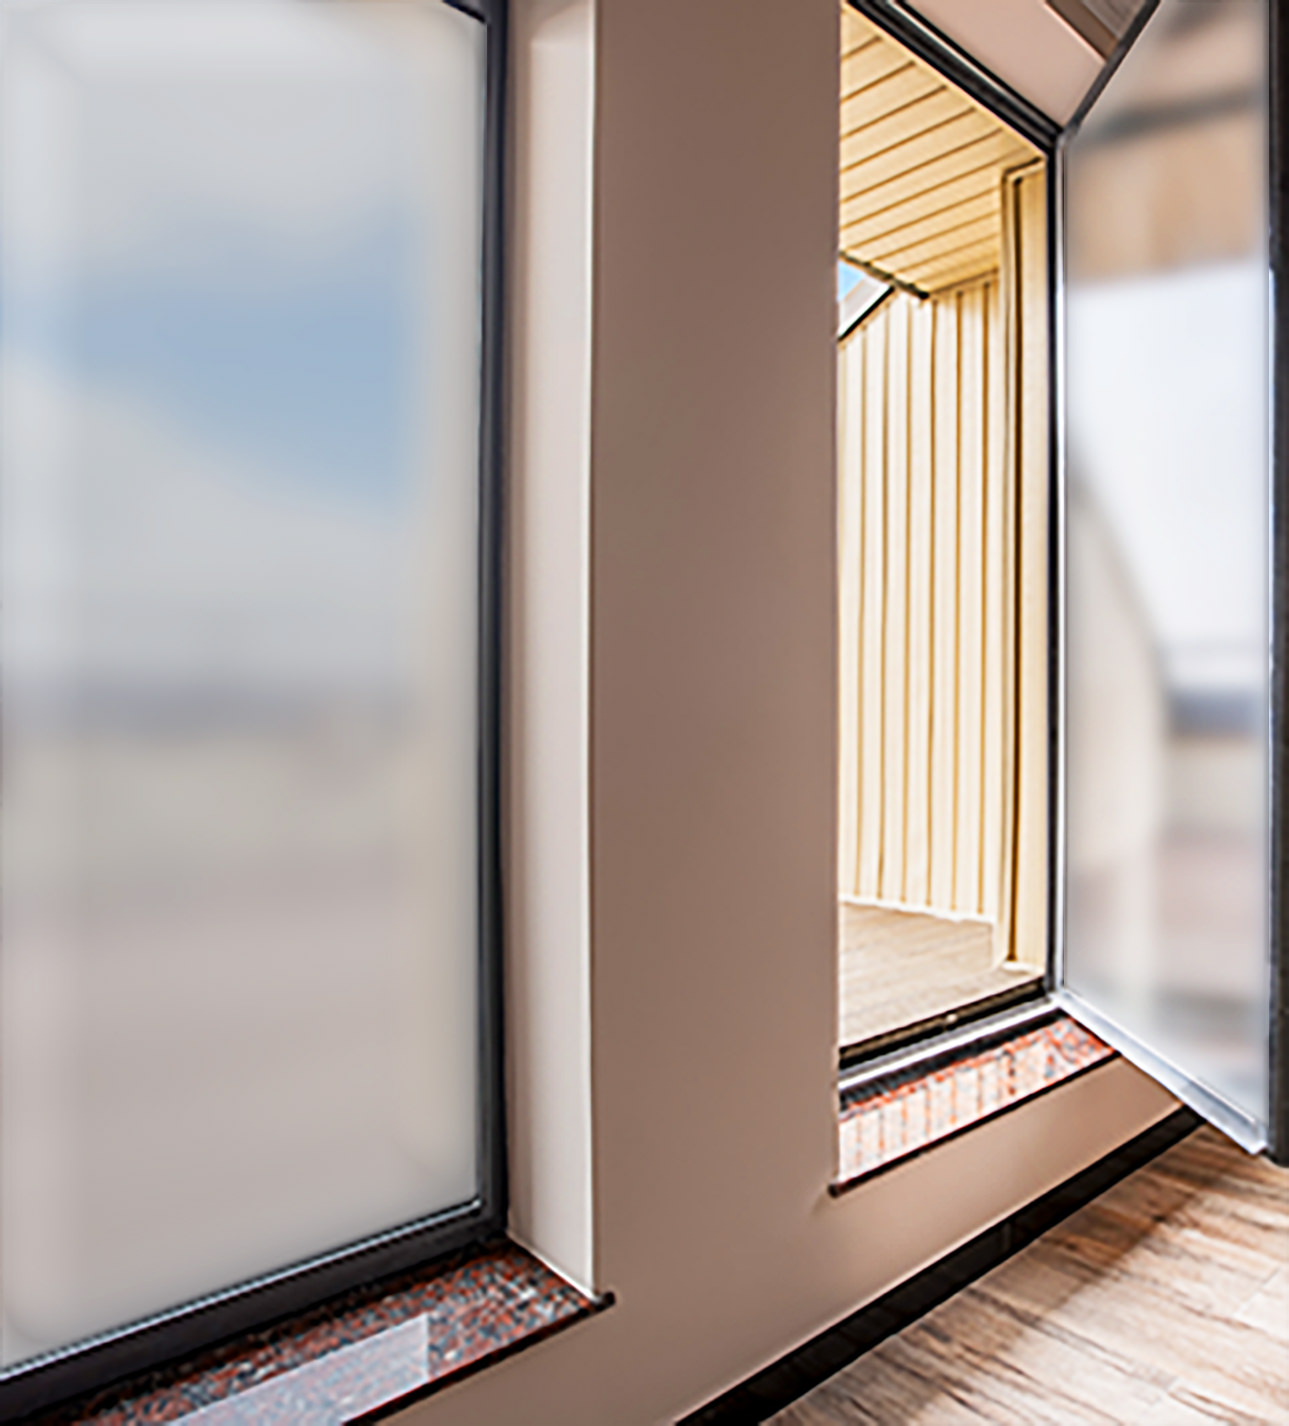 Spiegelfolie 3,28€/m² Selbstklebend Sonnenschutz Fenster